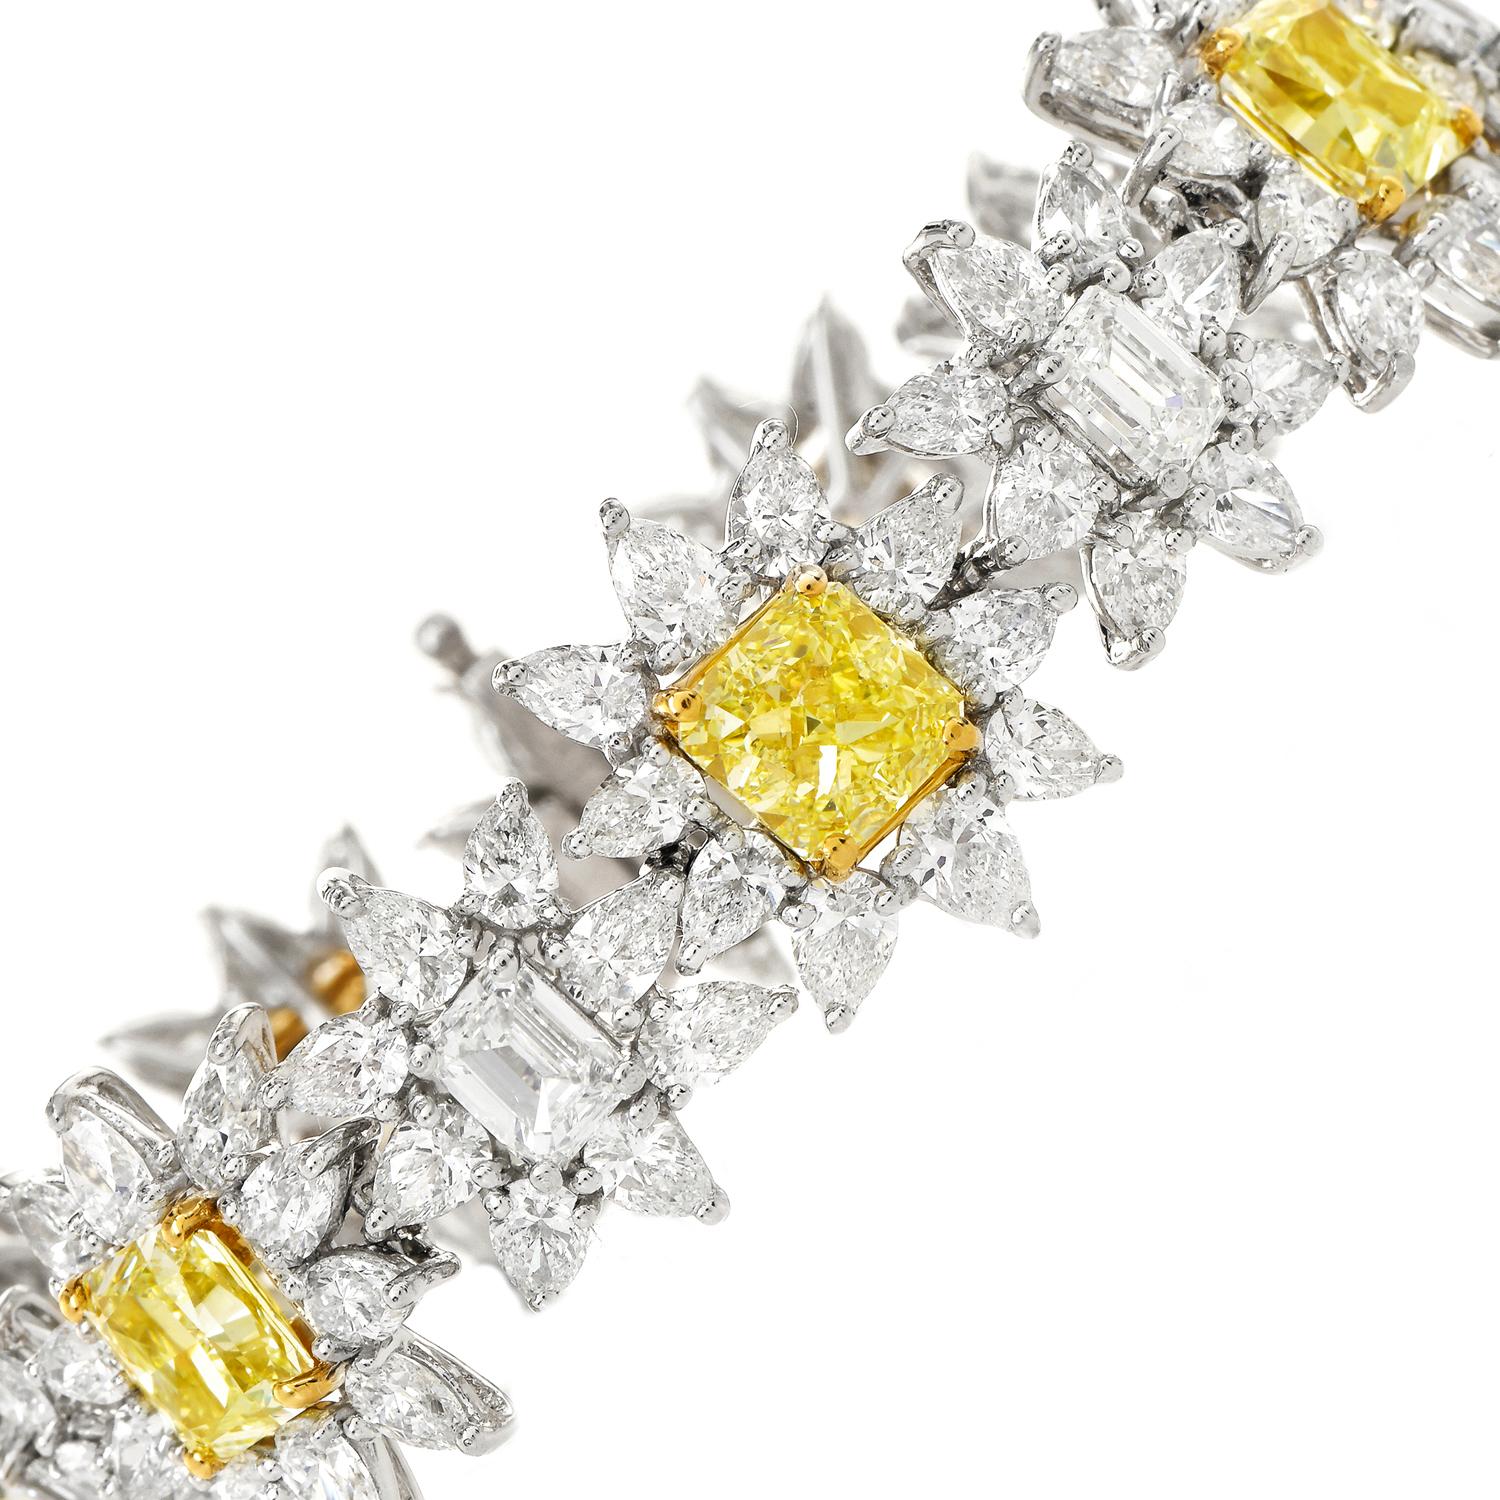 Ce bracelet séduisant a été réalisé en platine luxueux et agrémenté de griffes en or jaune 18 carats.
Au centre, 70 diamants de couleur naturelle jaune clair, taille coussin modifiée, 13,35 carats, de pureté VVVS1 à VS1, tous accompagnés d'un